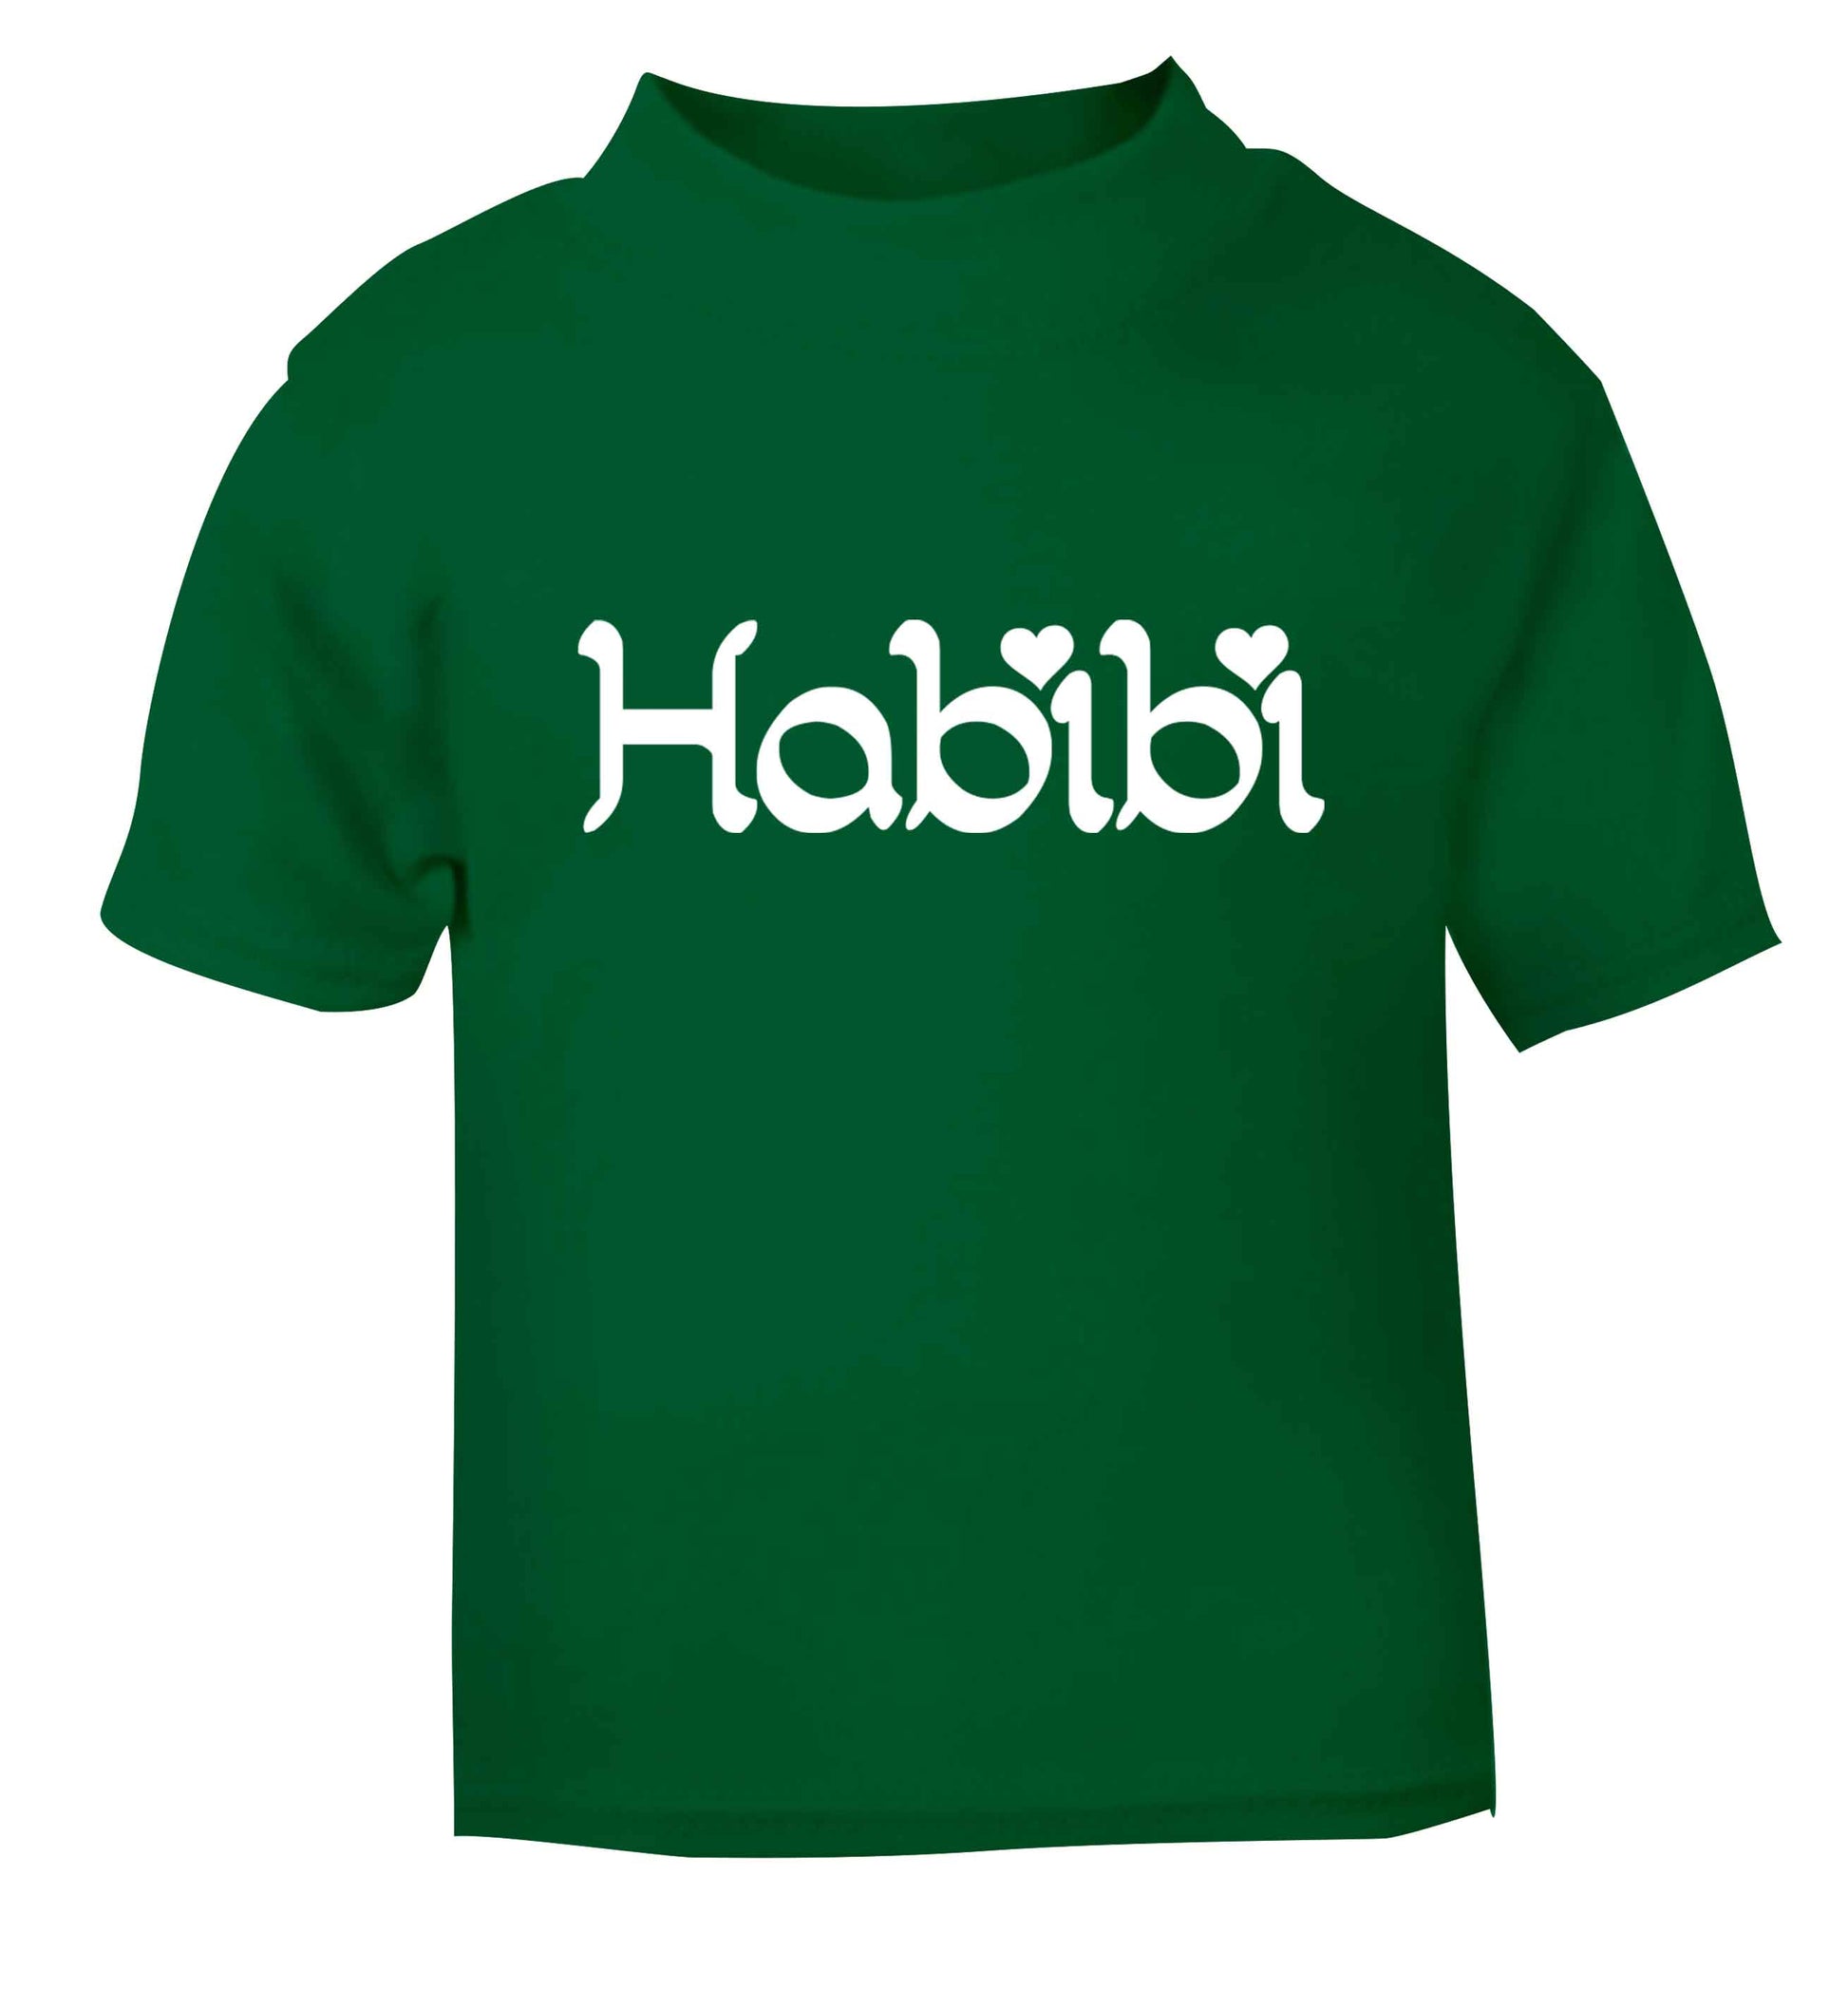 Habibi green baby toddler Tshirt 2 Years